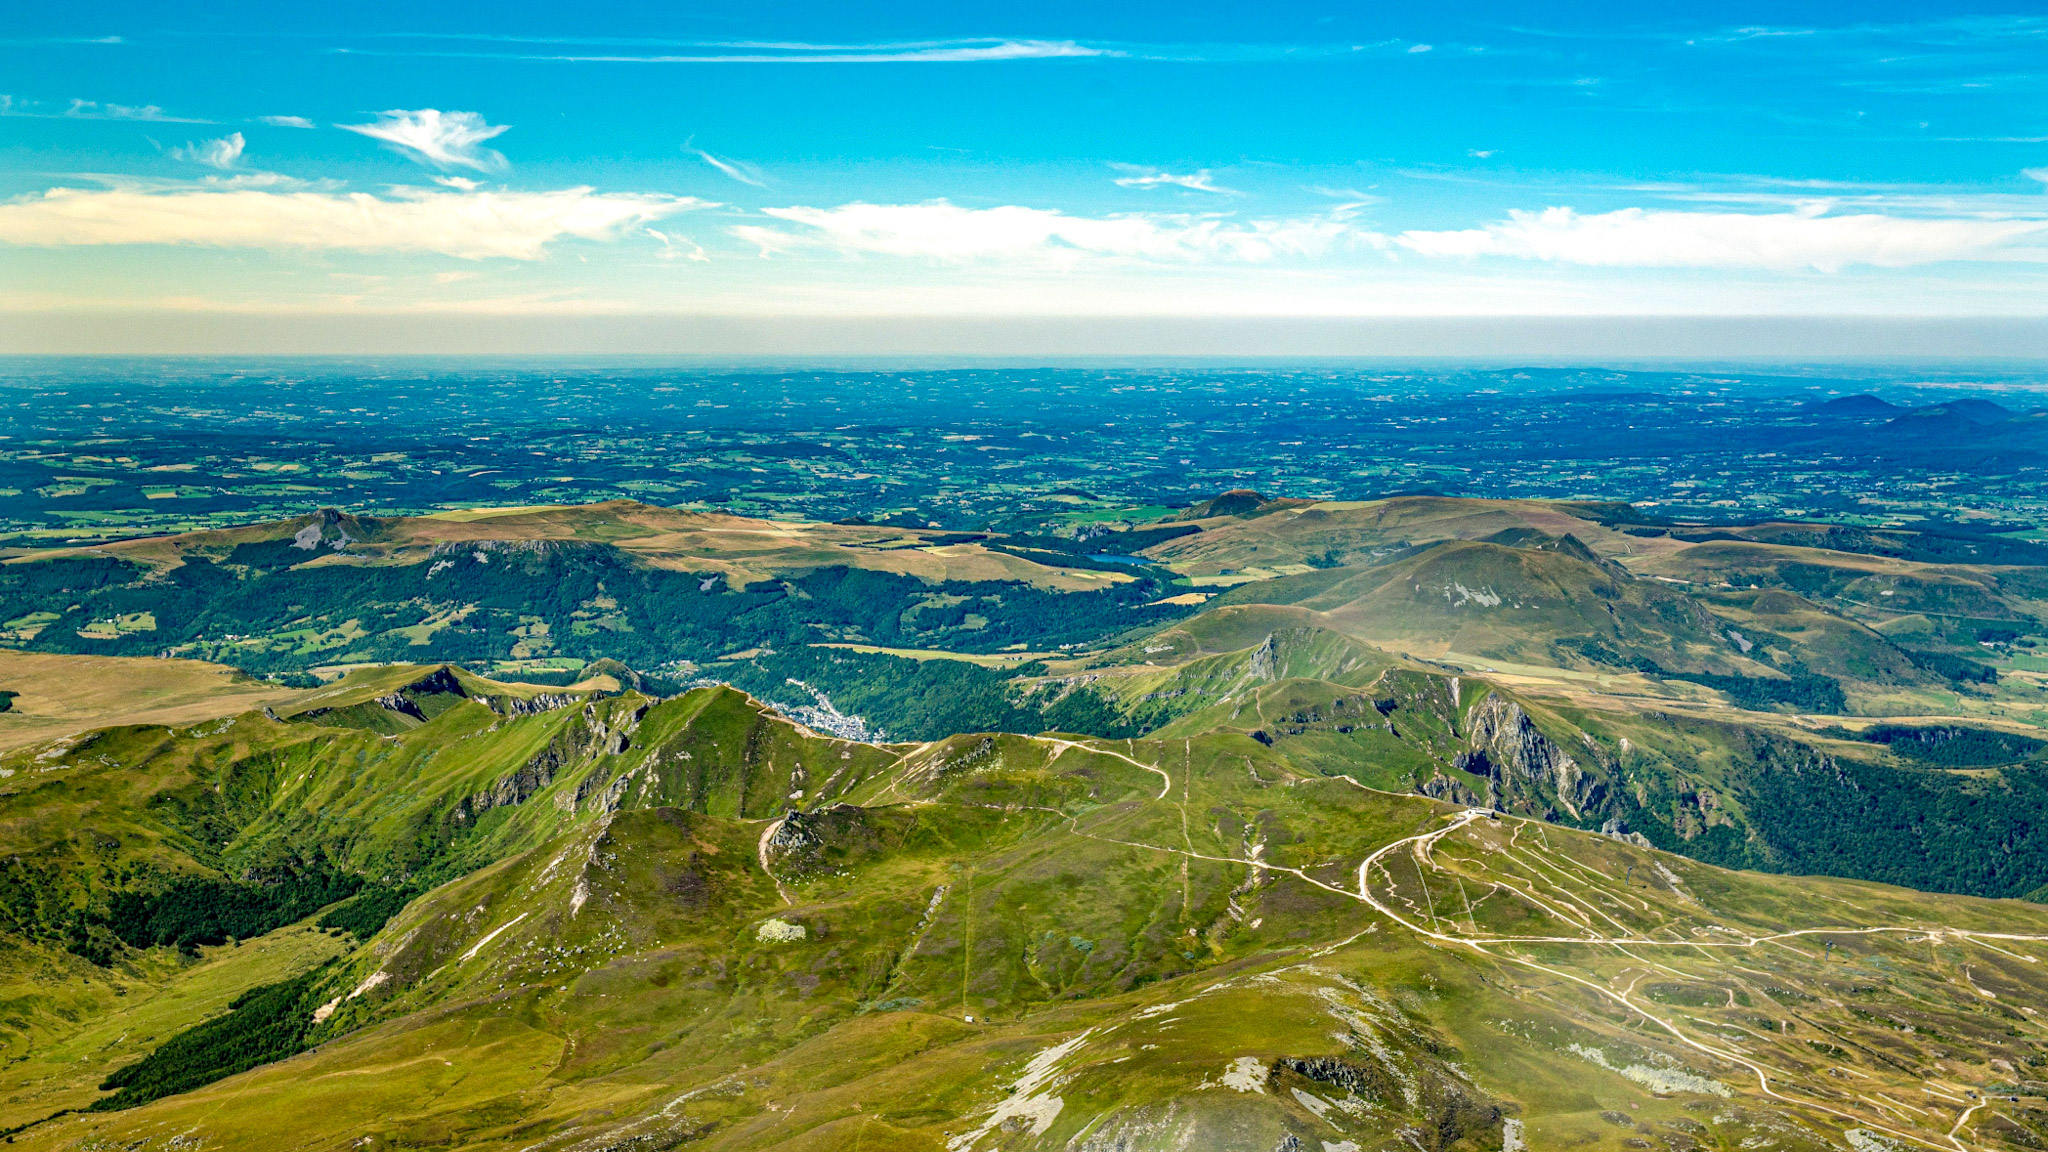 Monts Dores, Puy Ferrand, Puy de la Perdrix, Puy de Sancy and Mont Dore